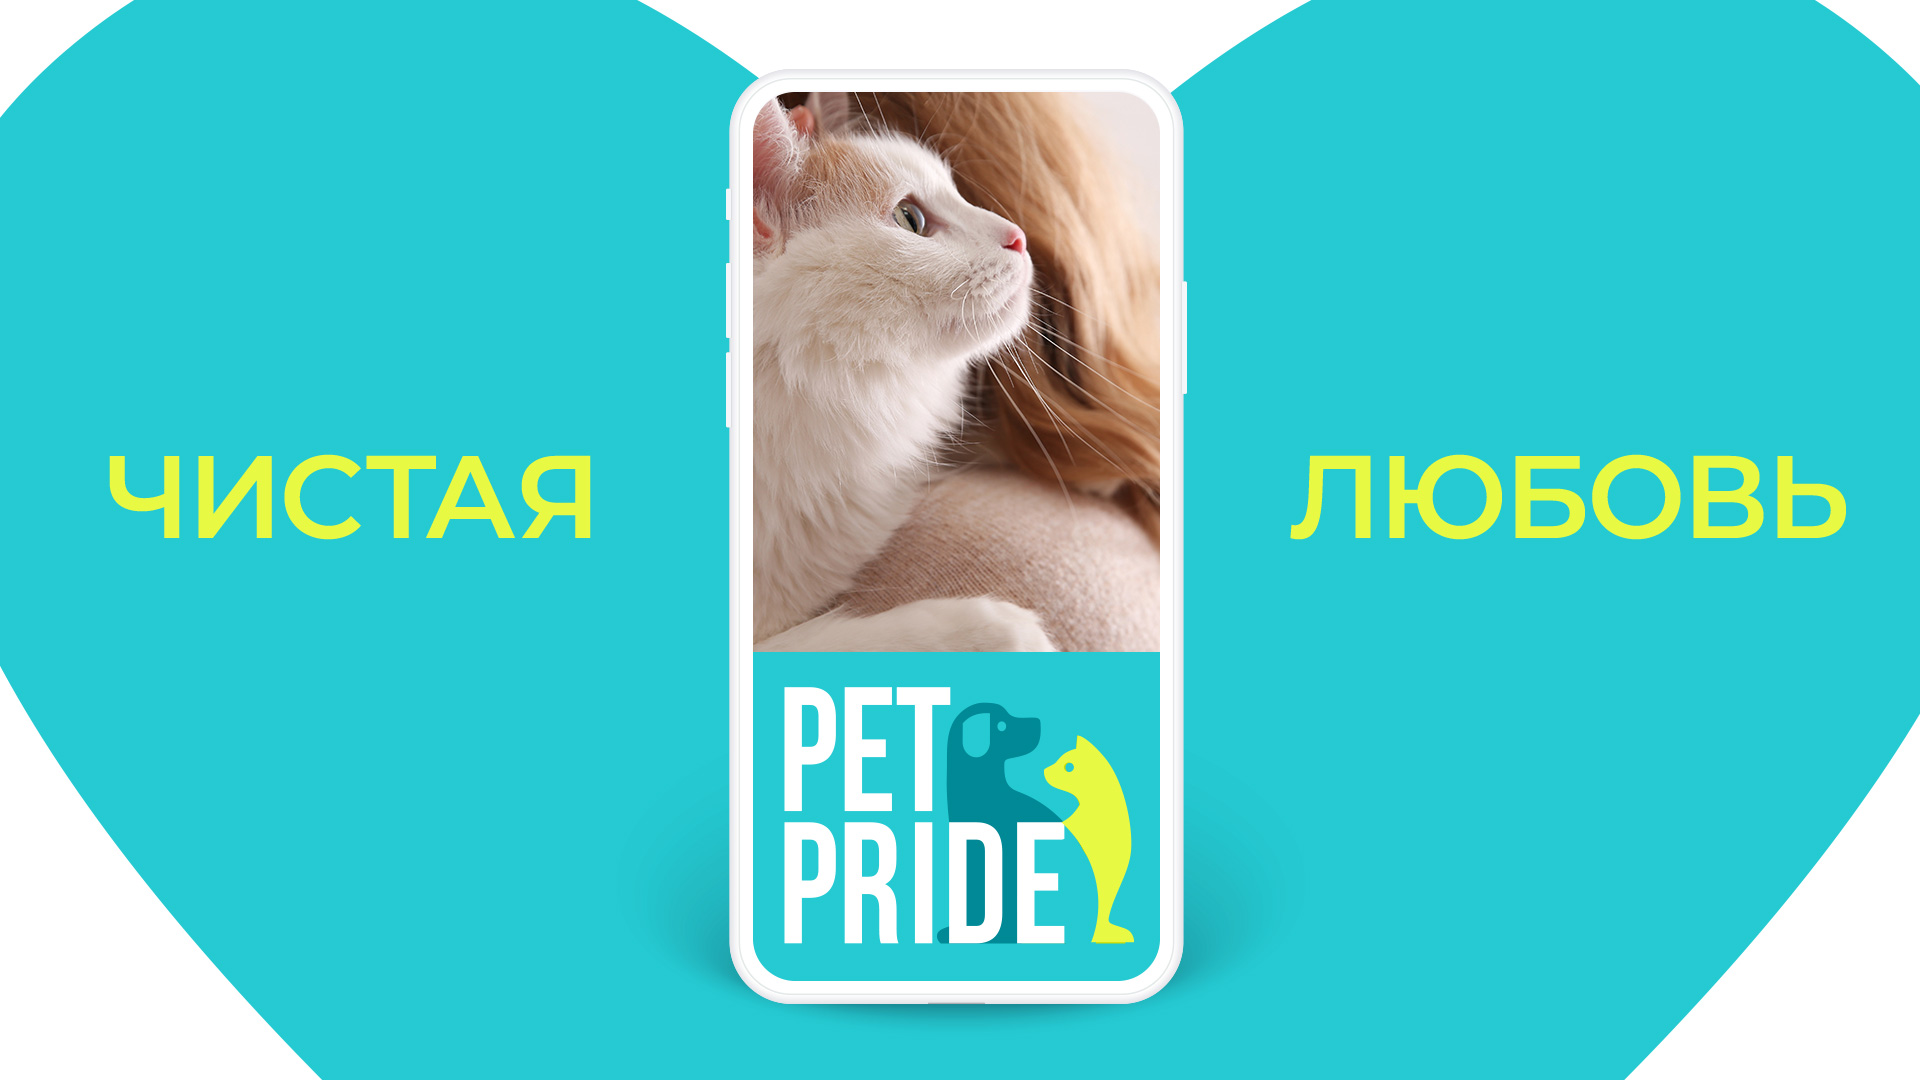 Коммуникационная кампания бренда Pet Pride